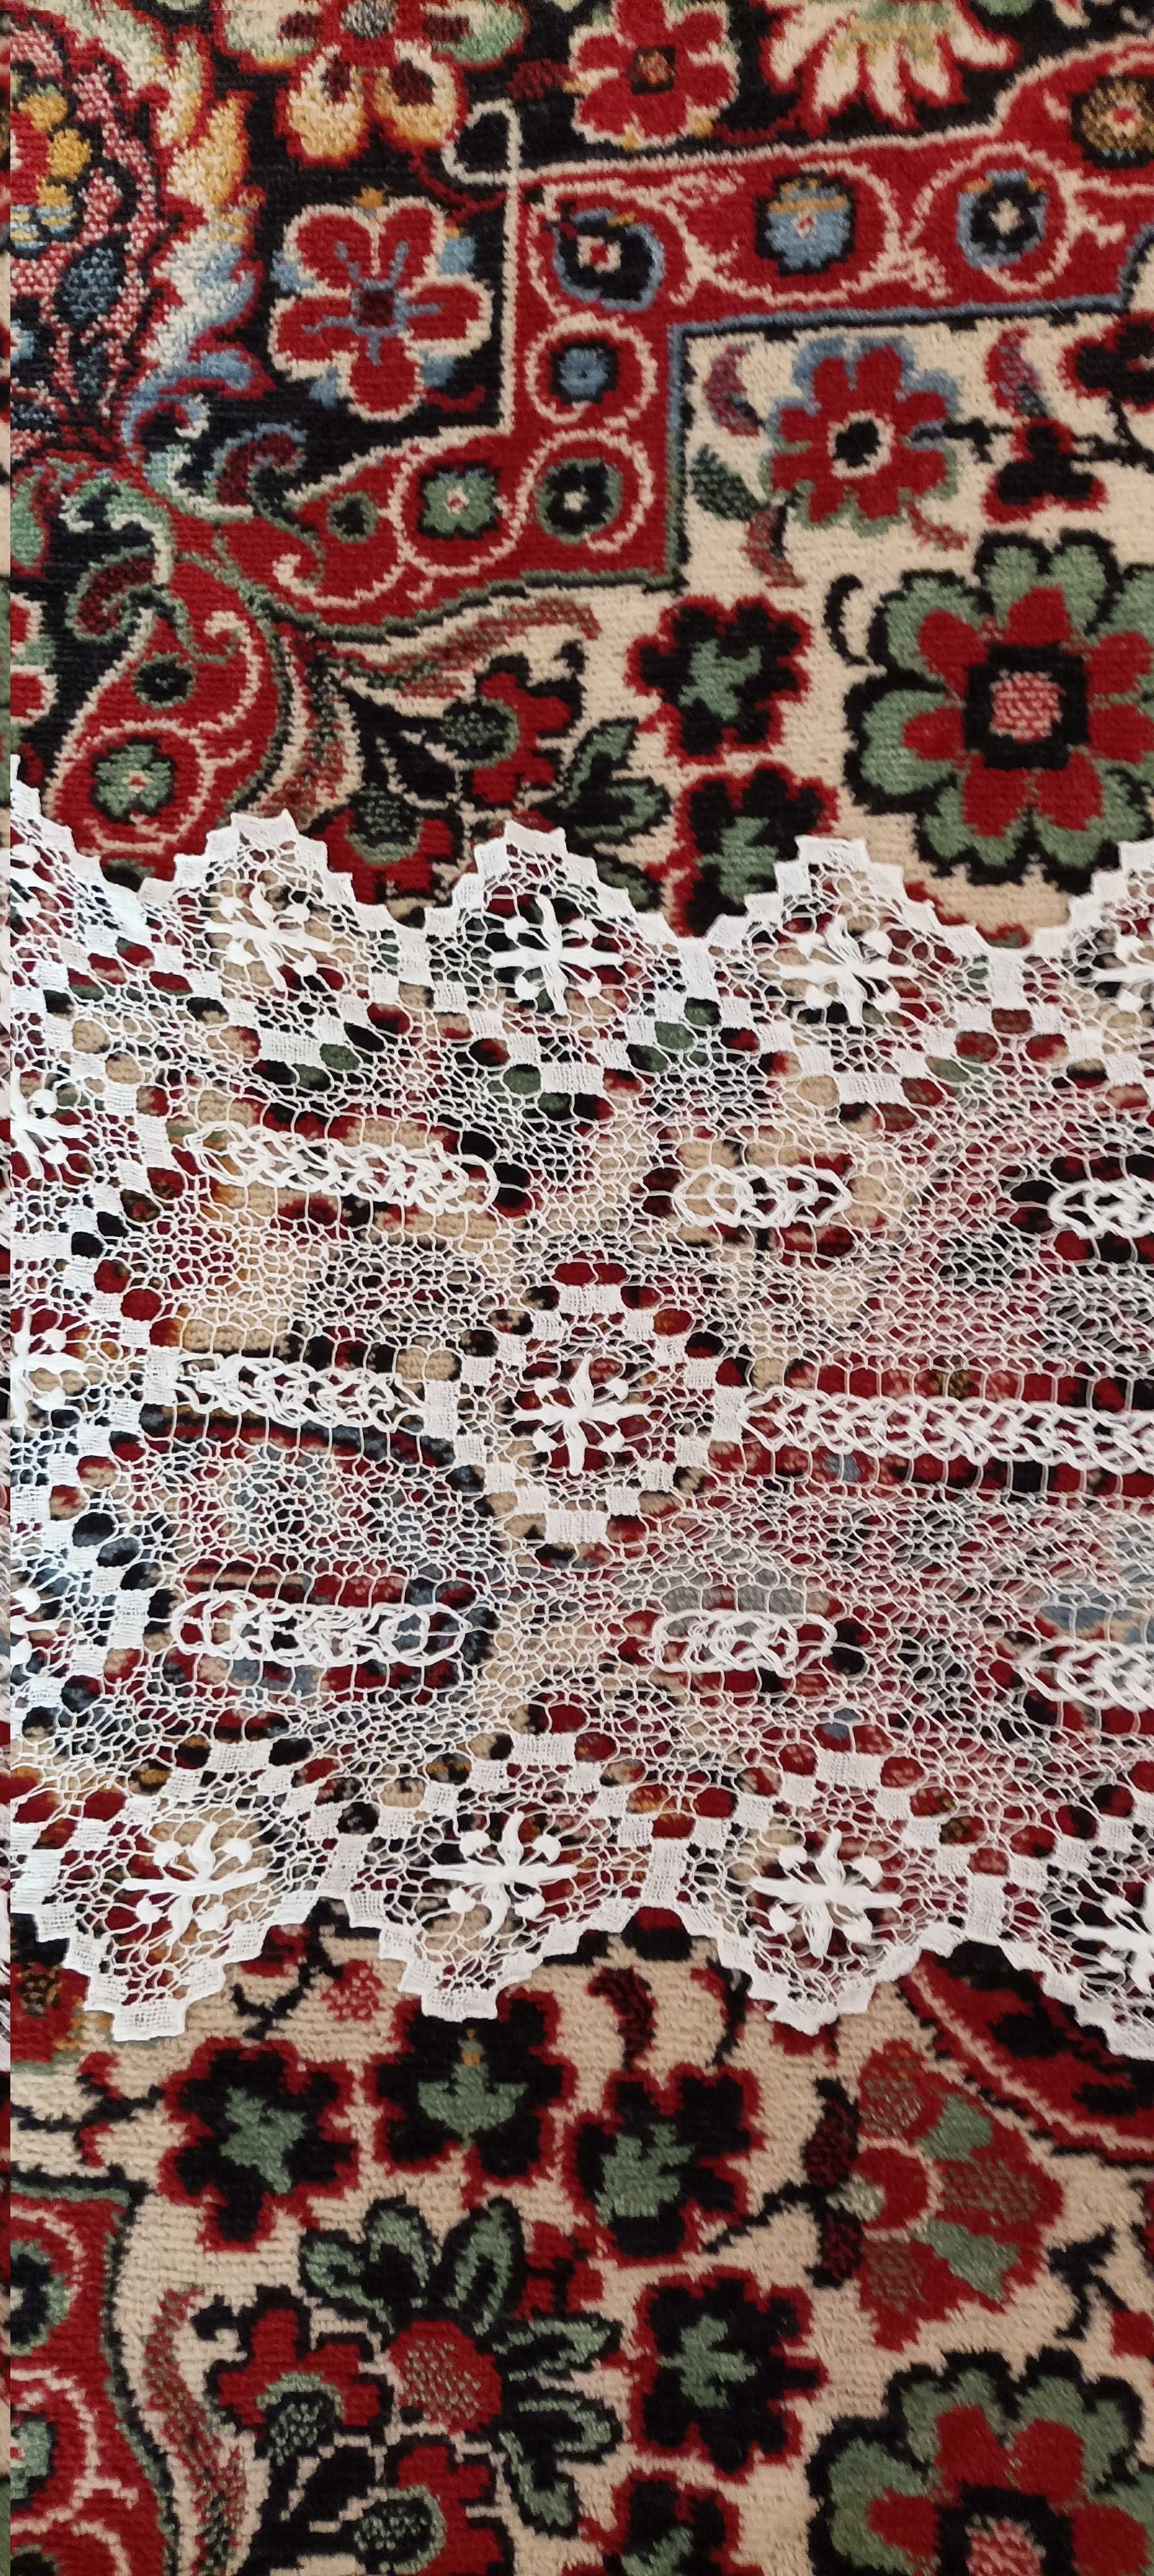 Кружевные салфетки ручного плетения ( челнок)  50гг